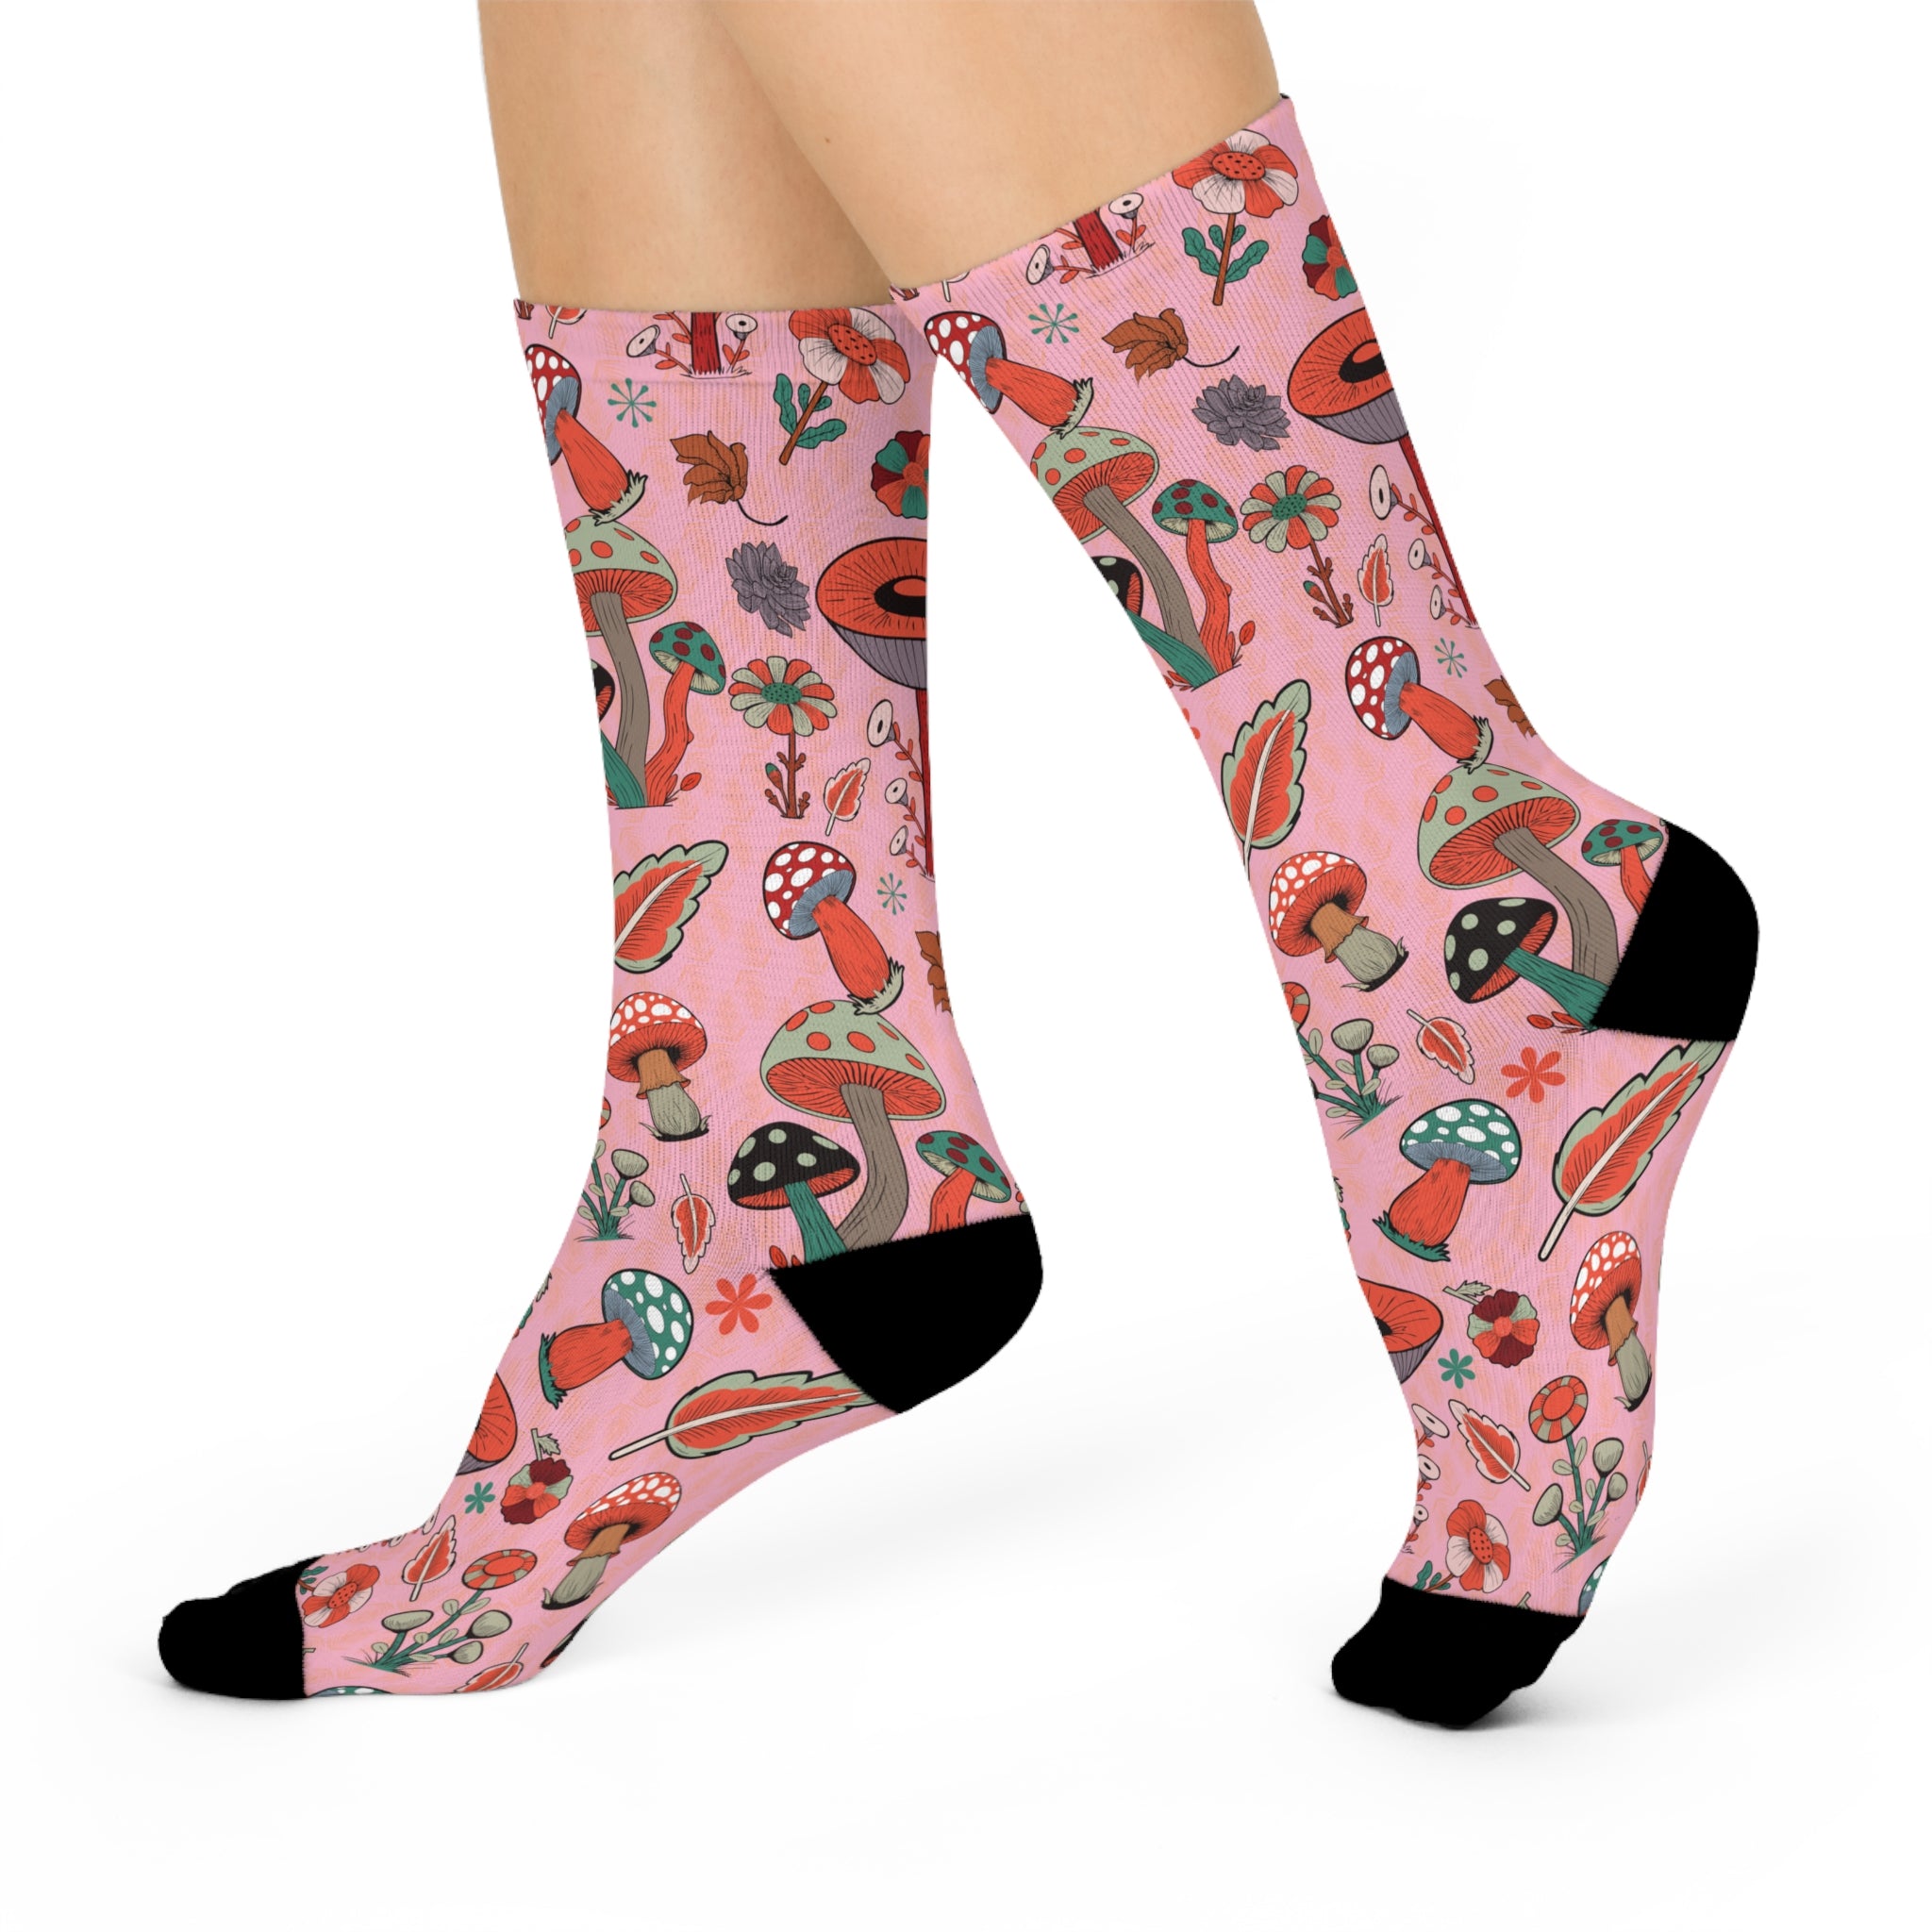 Wildflower Mushroom Socks